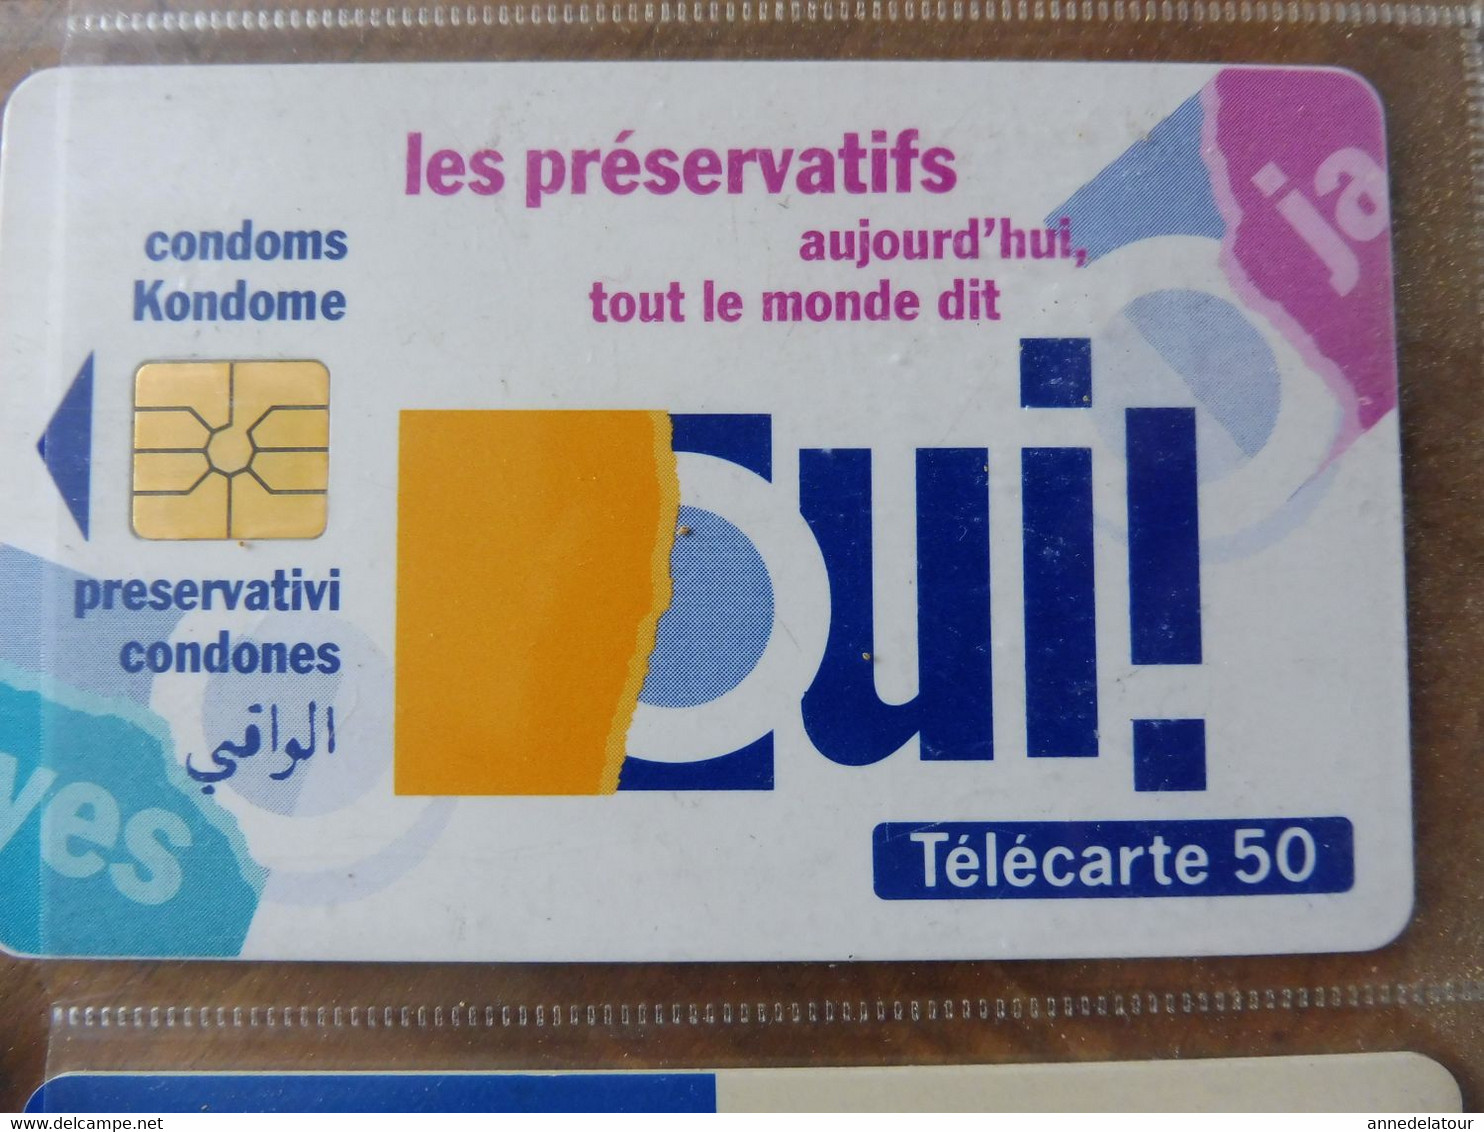 10 télécartes  FRANCE TELECOM   SIDA INFO SERVICE -  Marre d'être seul avec la dope, je suis séro depuis 90, etc